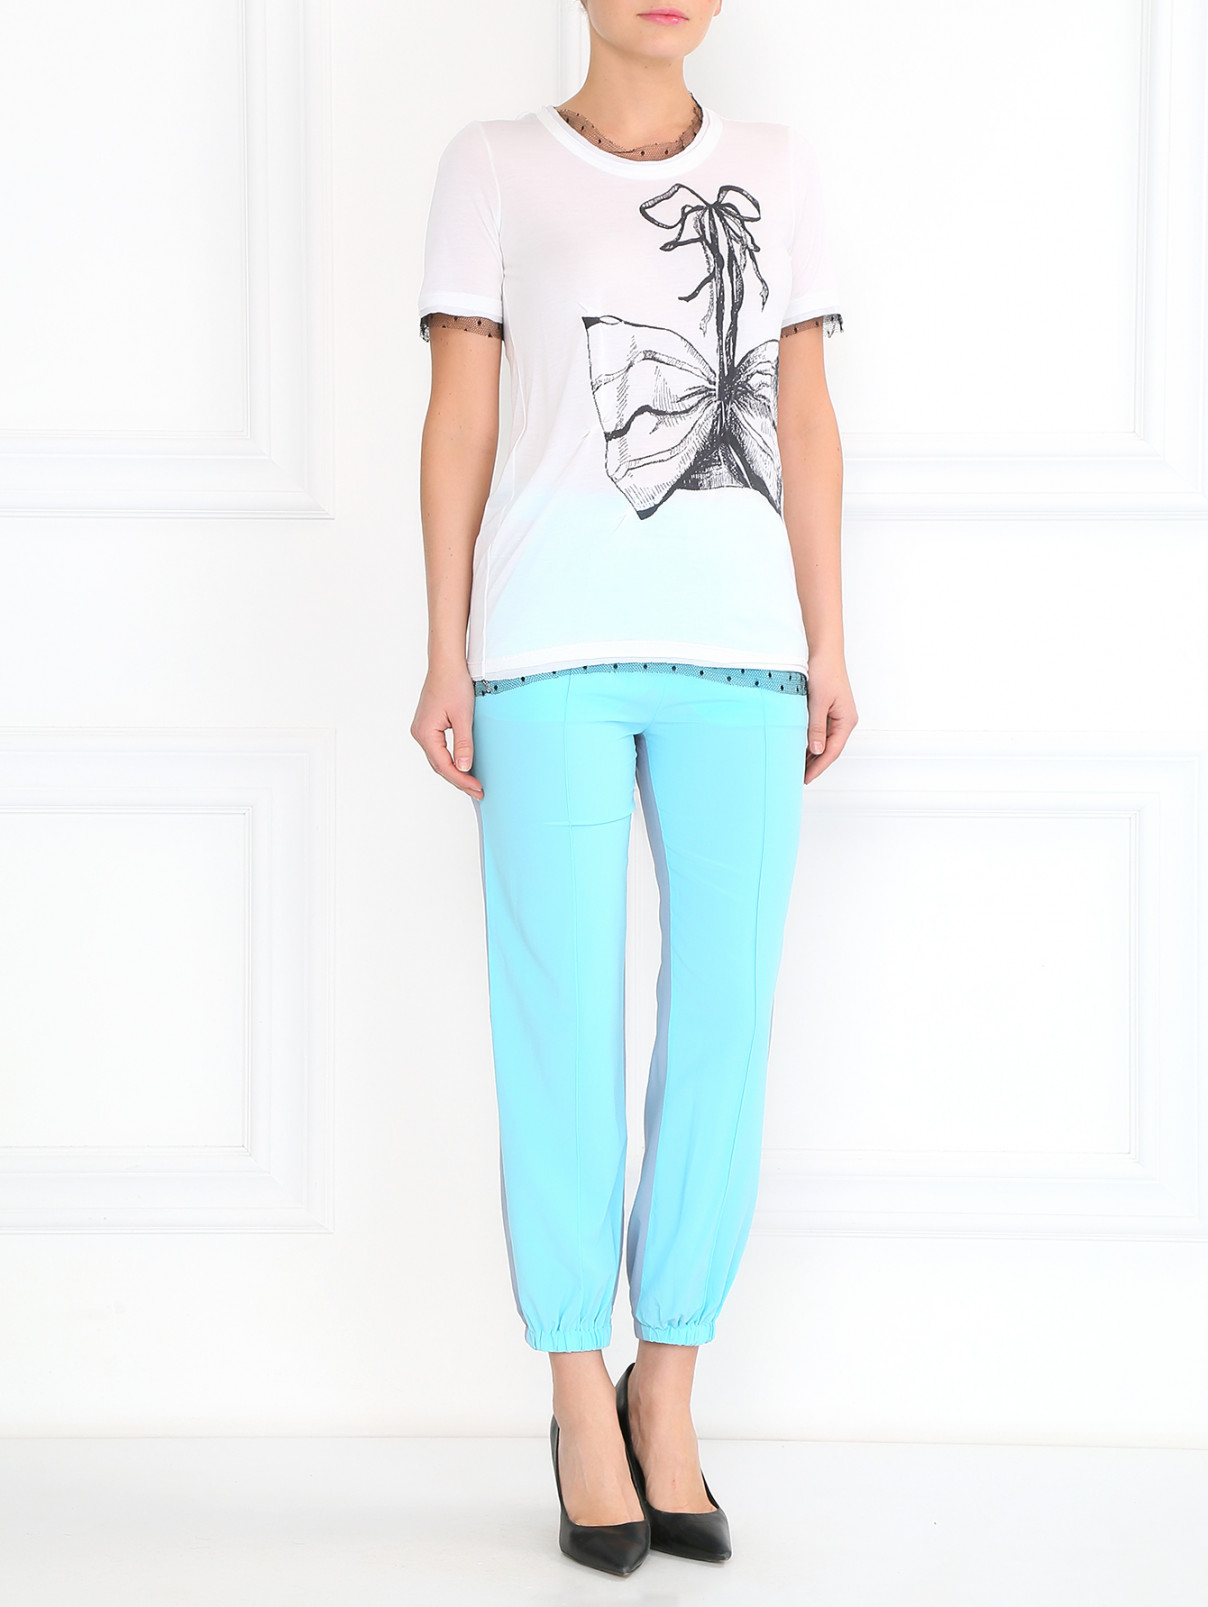 Свободные брюки из шелка Sonia Rykiel  –  Модель Общий вид  – Цвет:  Синий